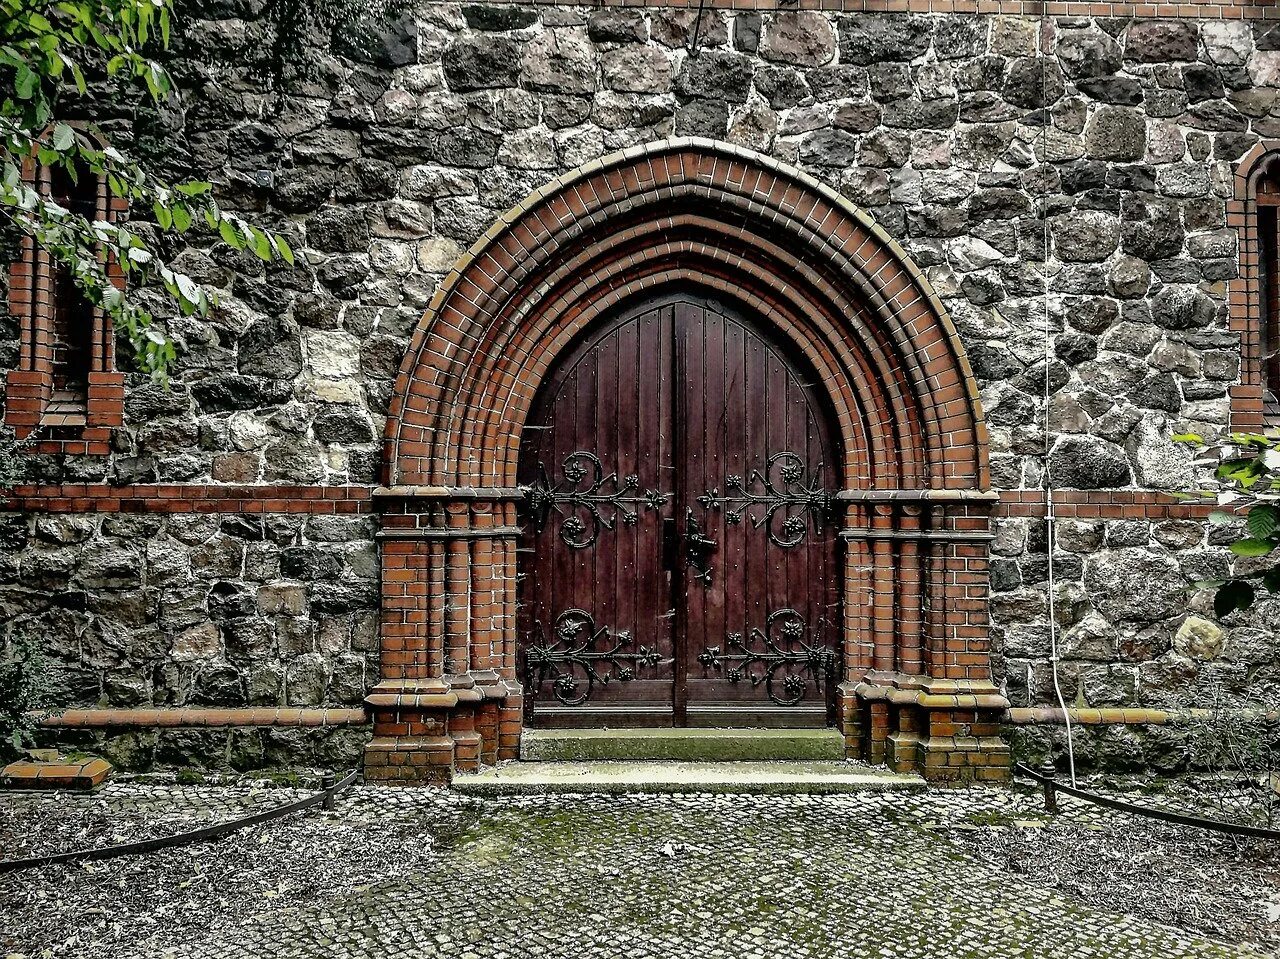 Открой входные ворота. Крепость Абаата арочные ворота. Крепость Абаата Абхазия Церковь арочные ворота. Арка в замке. Каменная арка Фетхие.